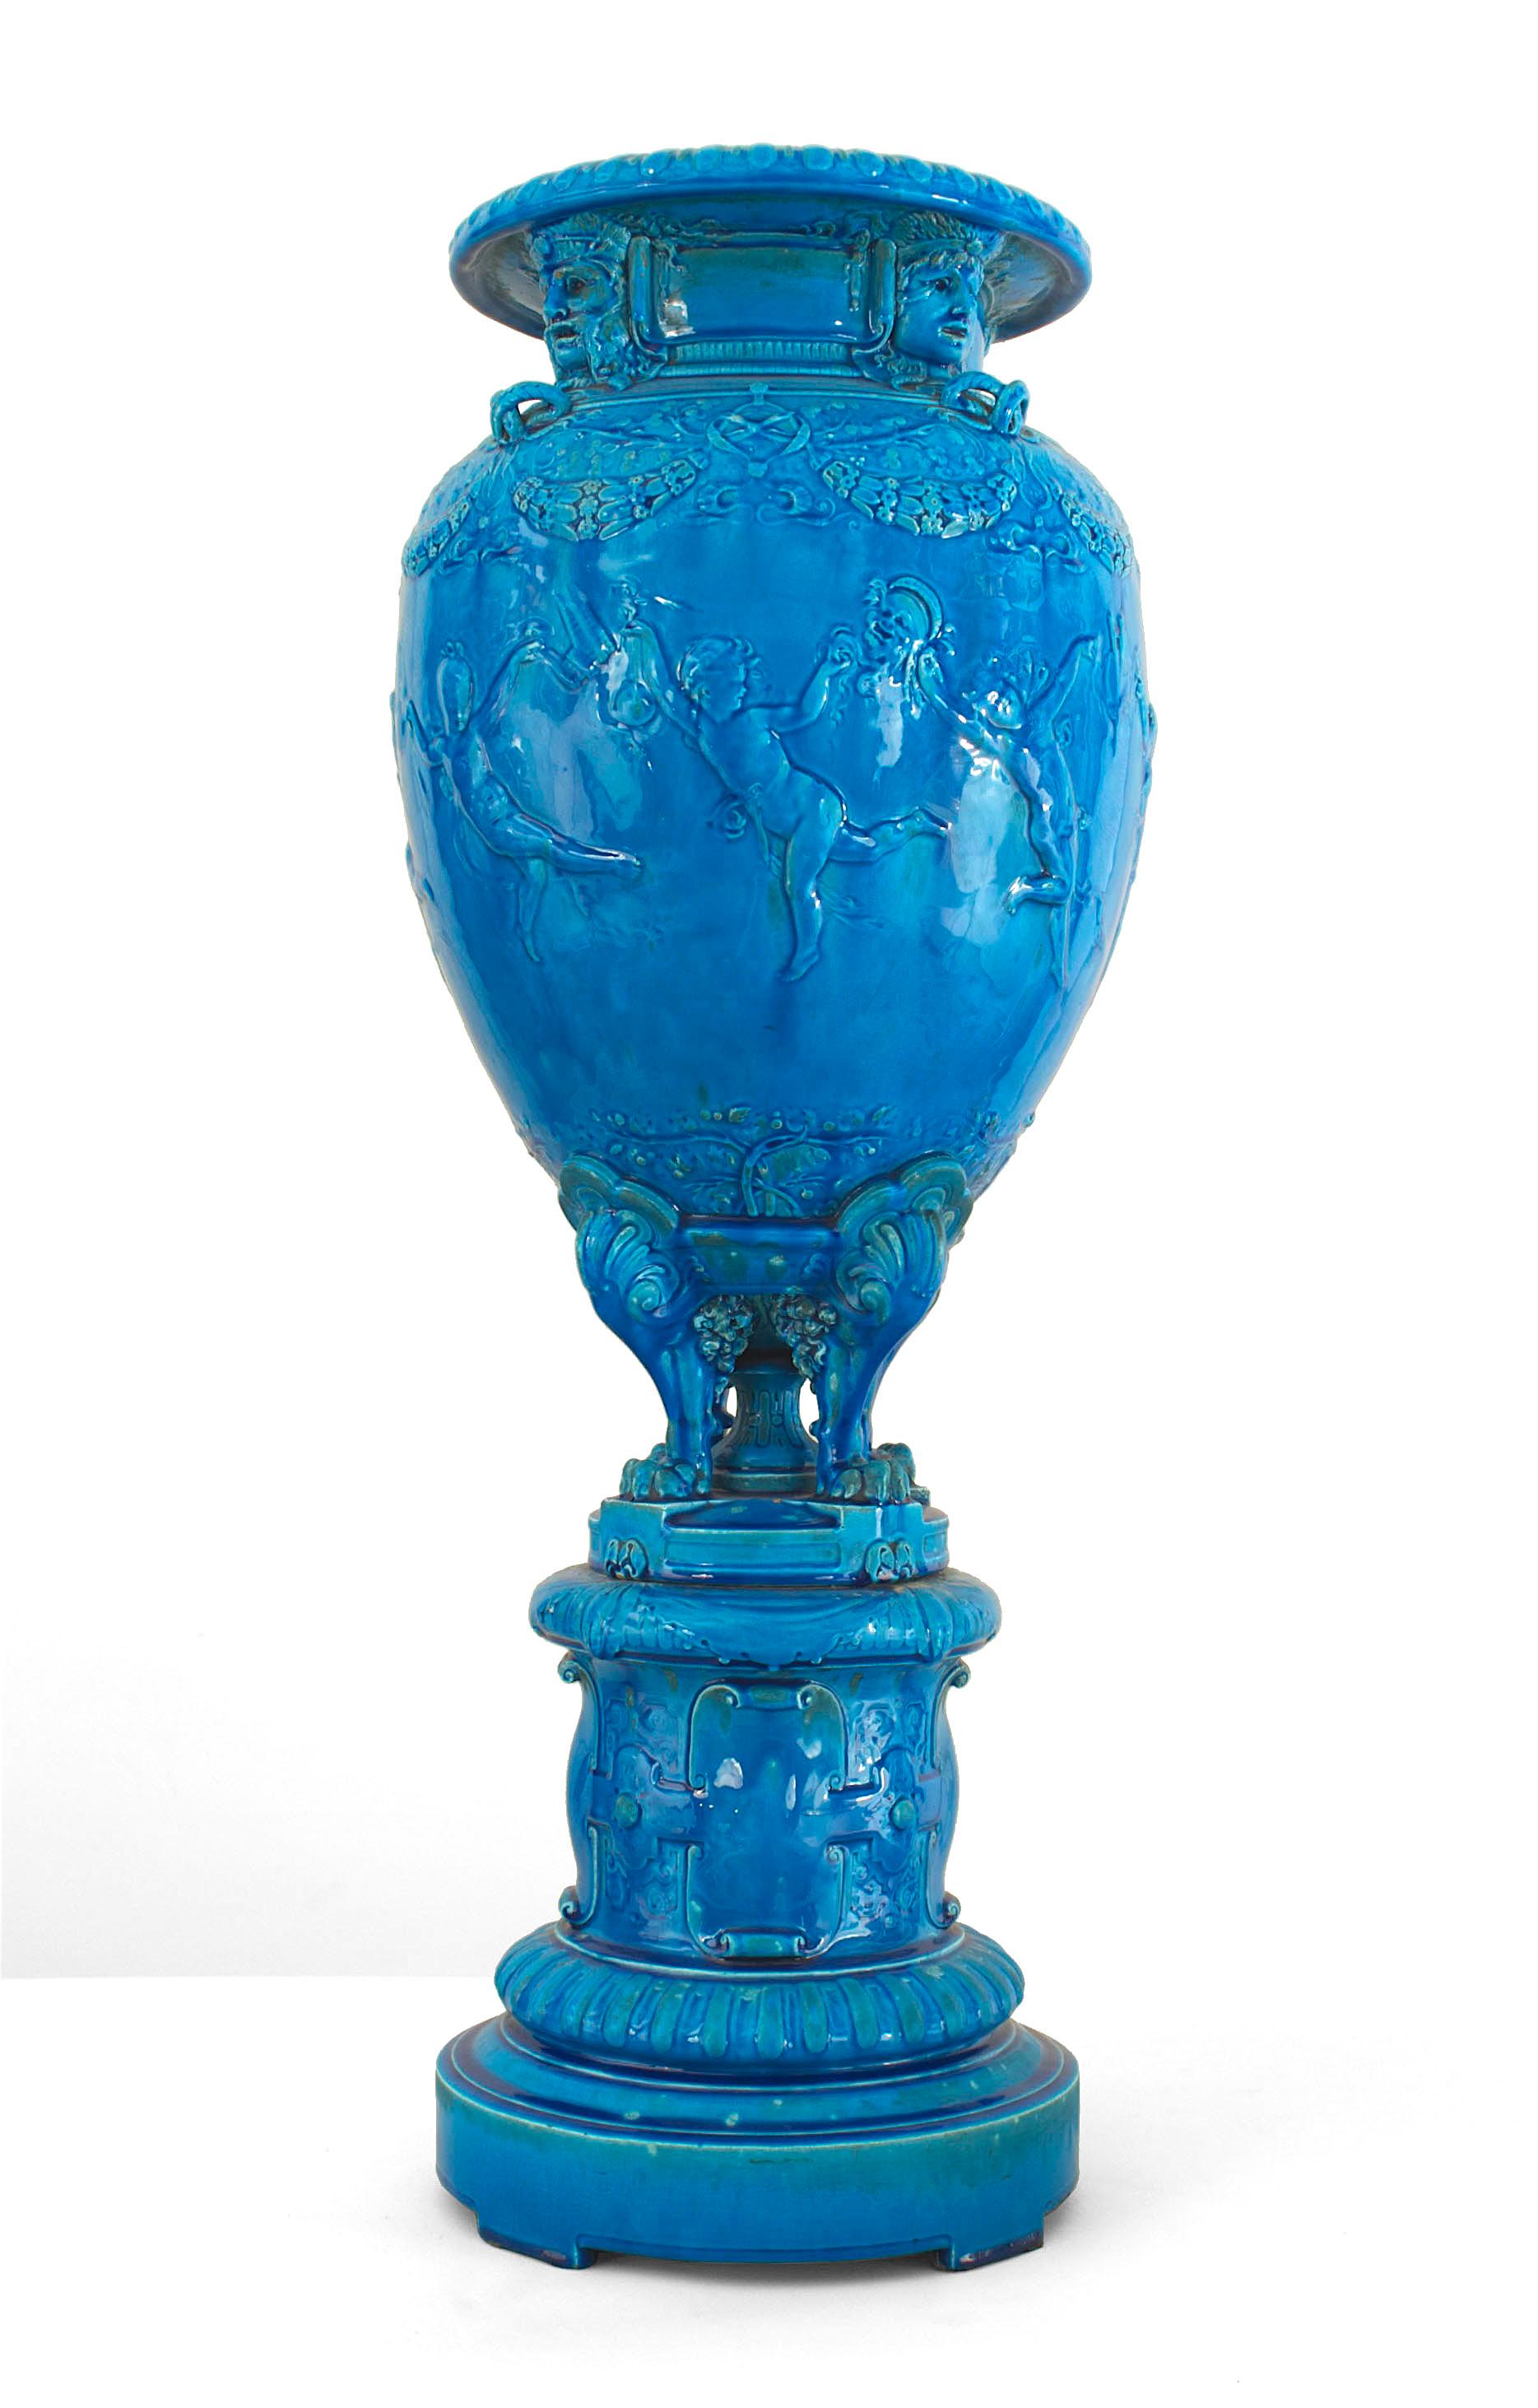 Vase monumental victorien en porcelaine de Sèvres turquoise avec des cupidons en relief sur une base ronde (signé JOSEPH CHERET)
